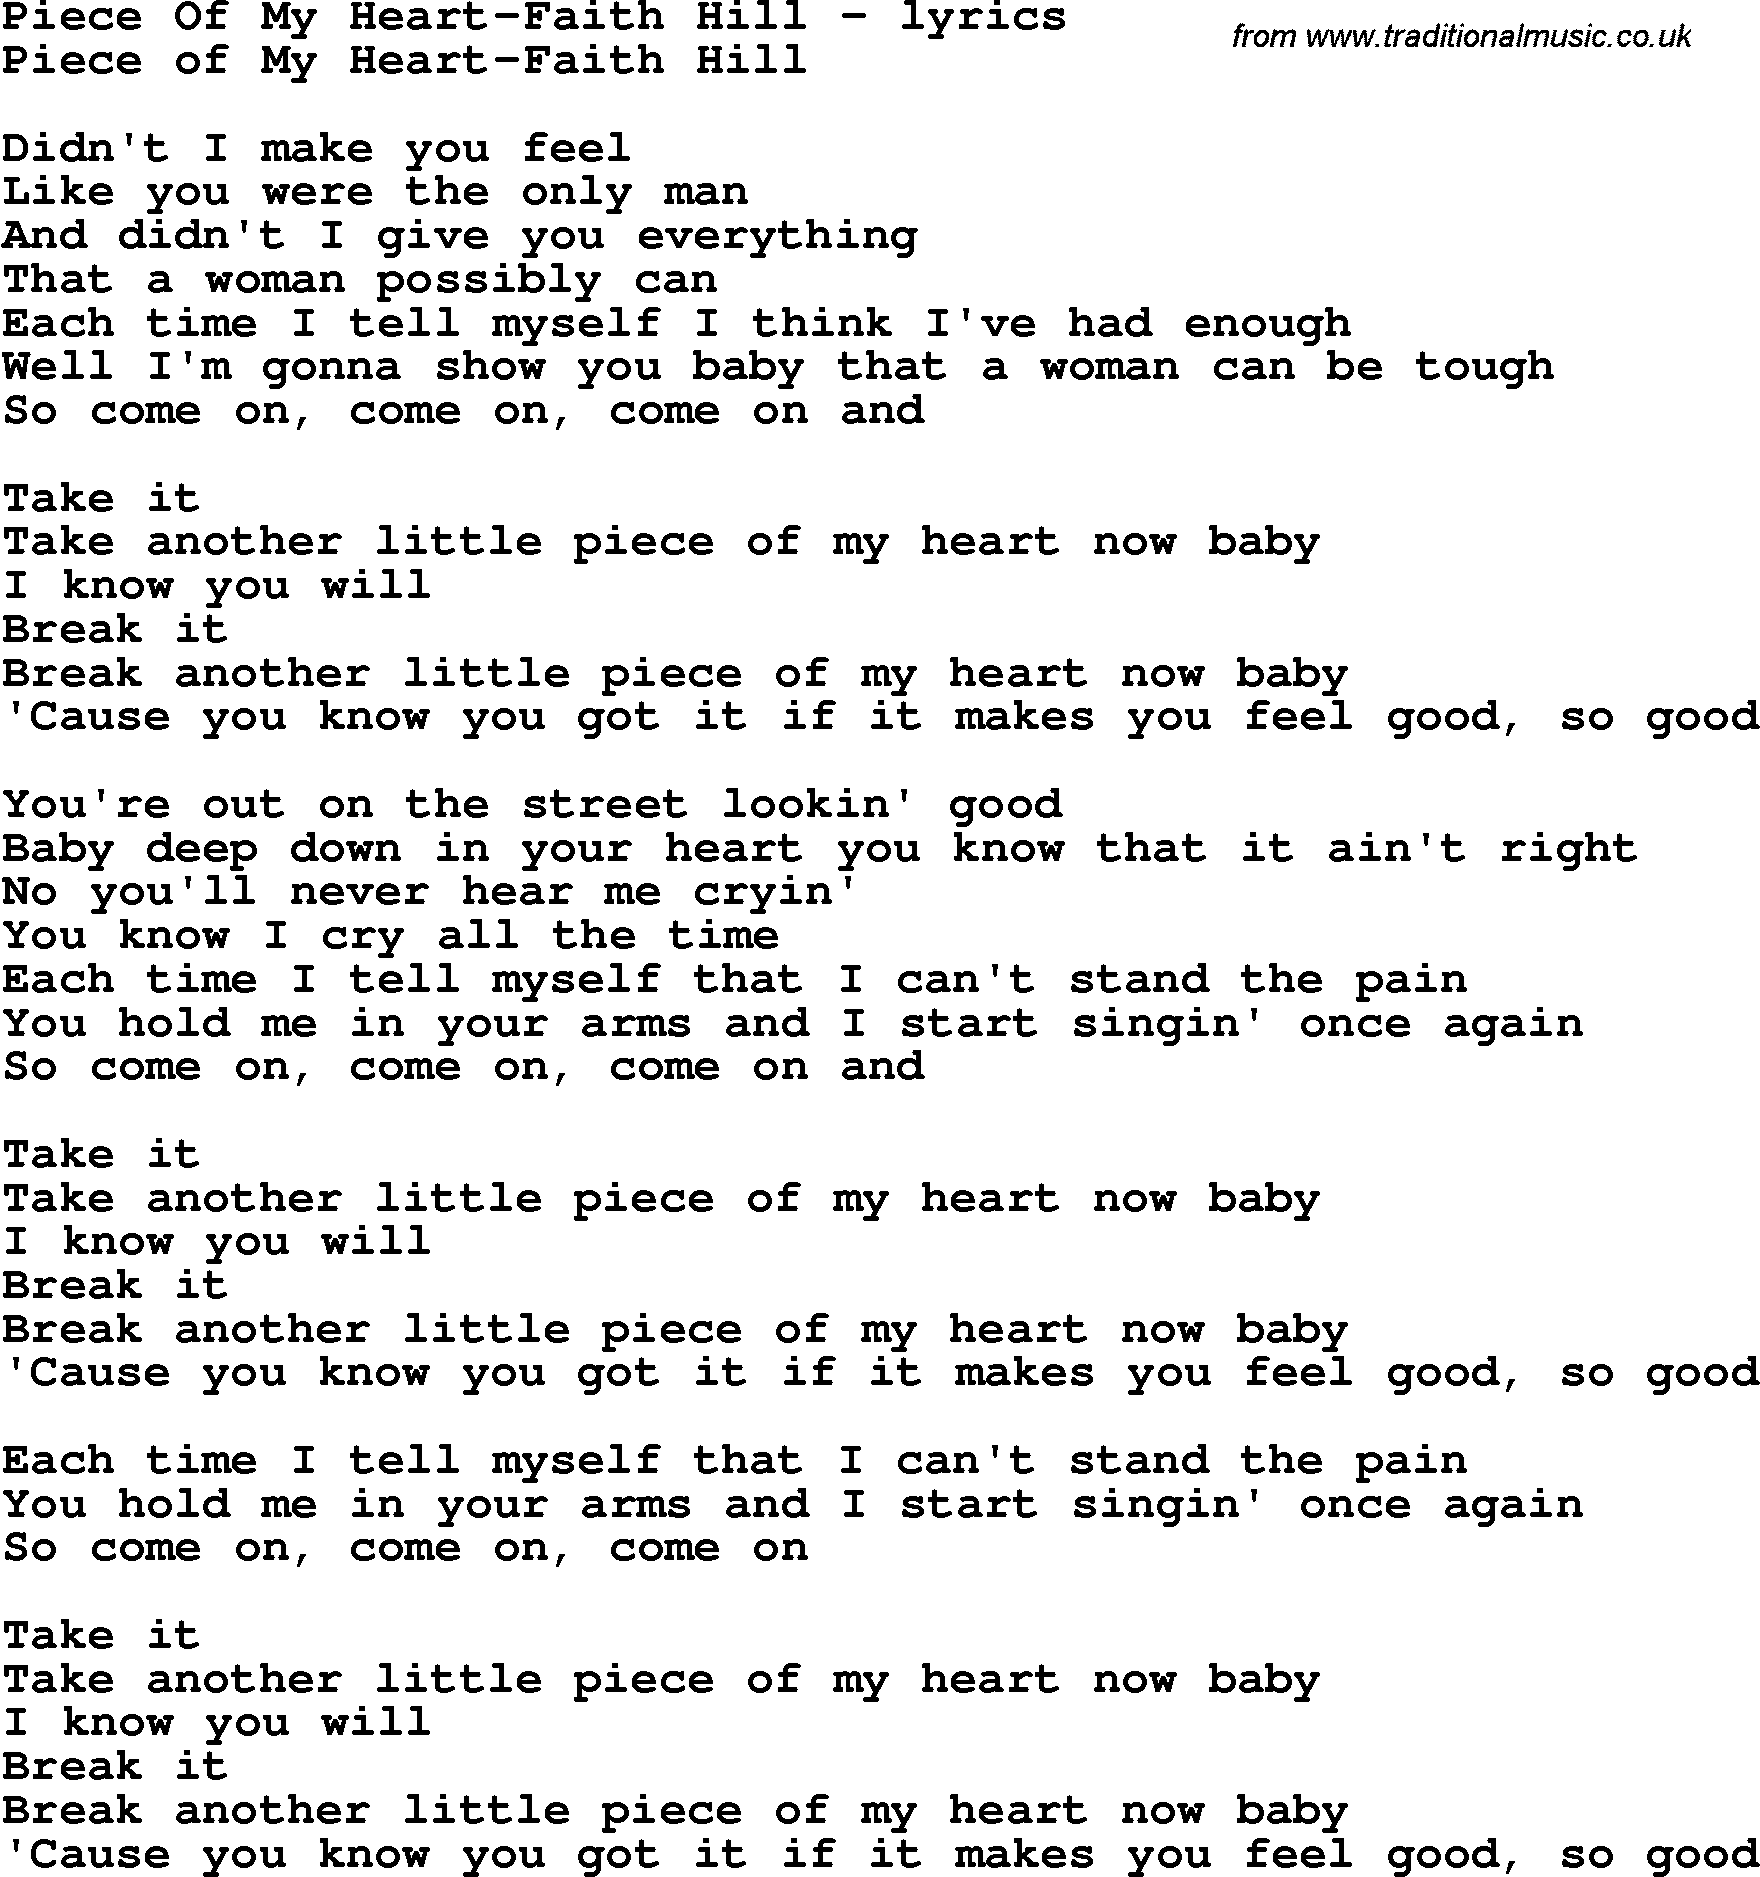 Love Song Lyrics for: Piece Of My Heart-Faith Hill